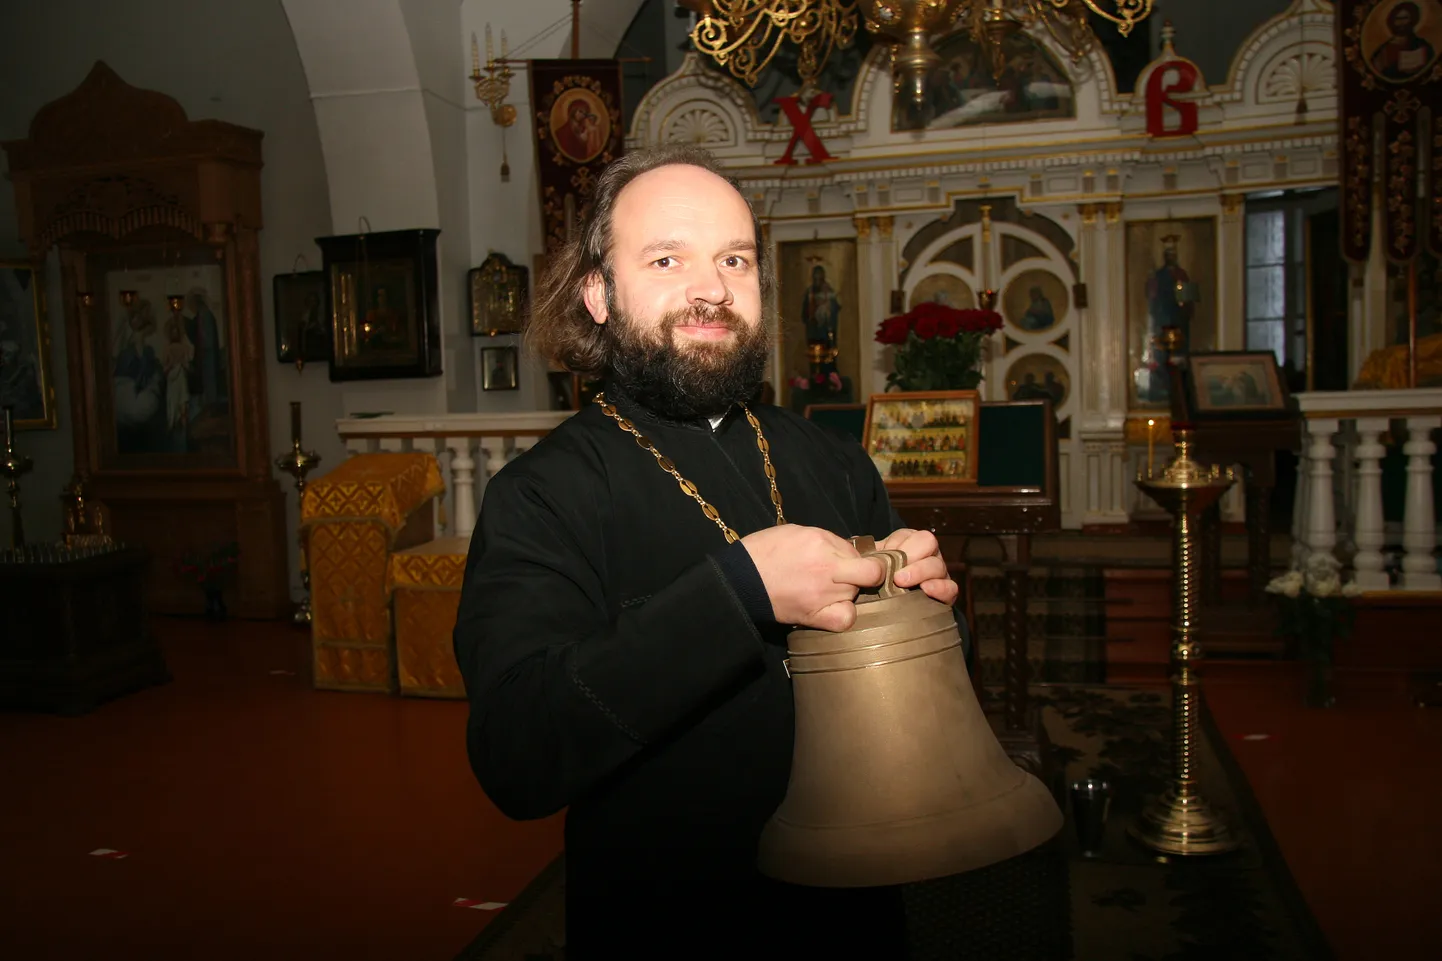 Настоятель храма протоиерей Андрей Суслов рад, что новые колокола прибыли, с нетерпением ждут возможности услышать их голос.